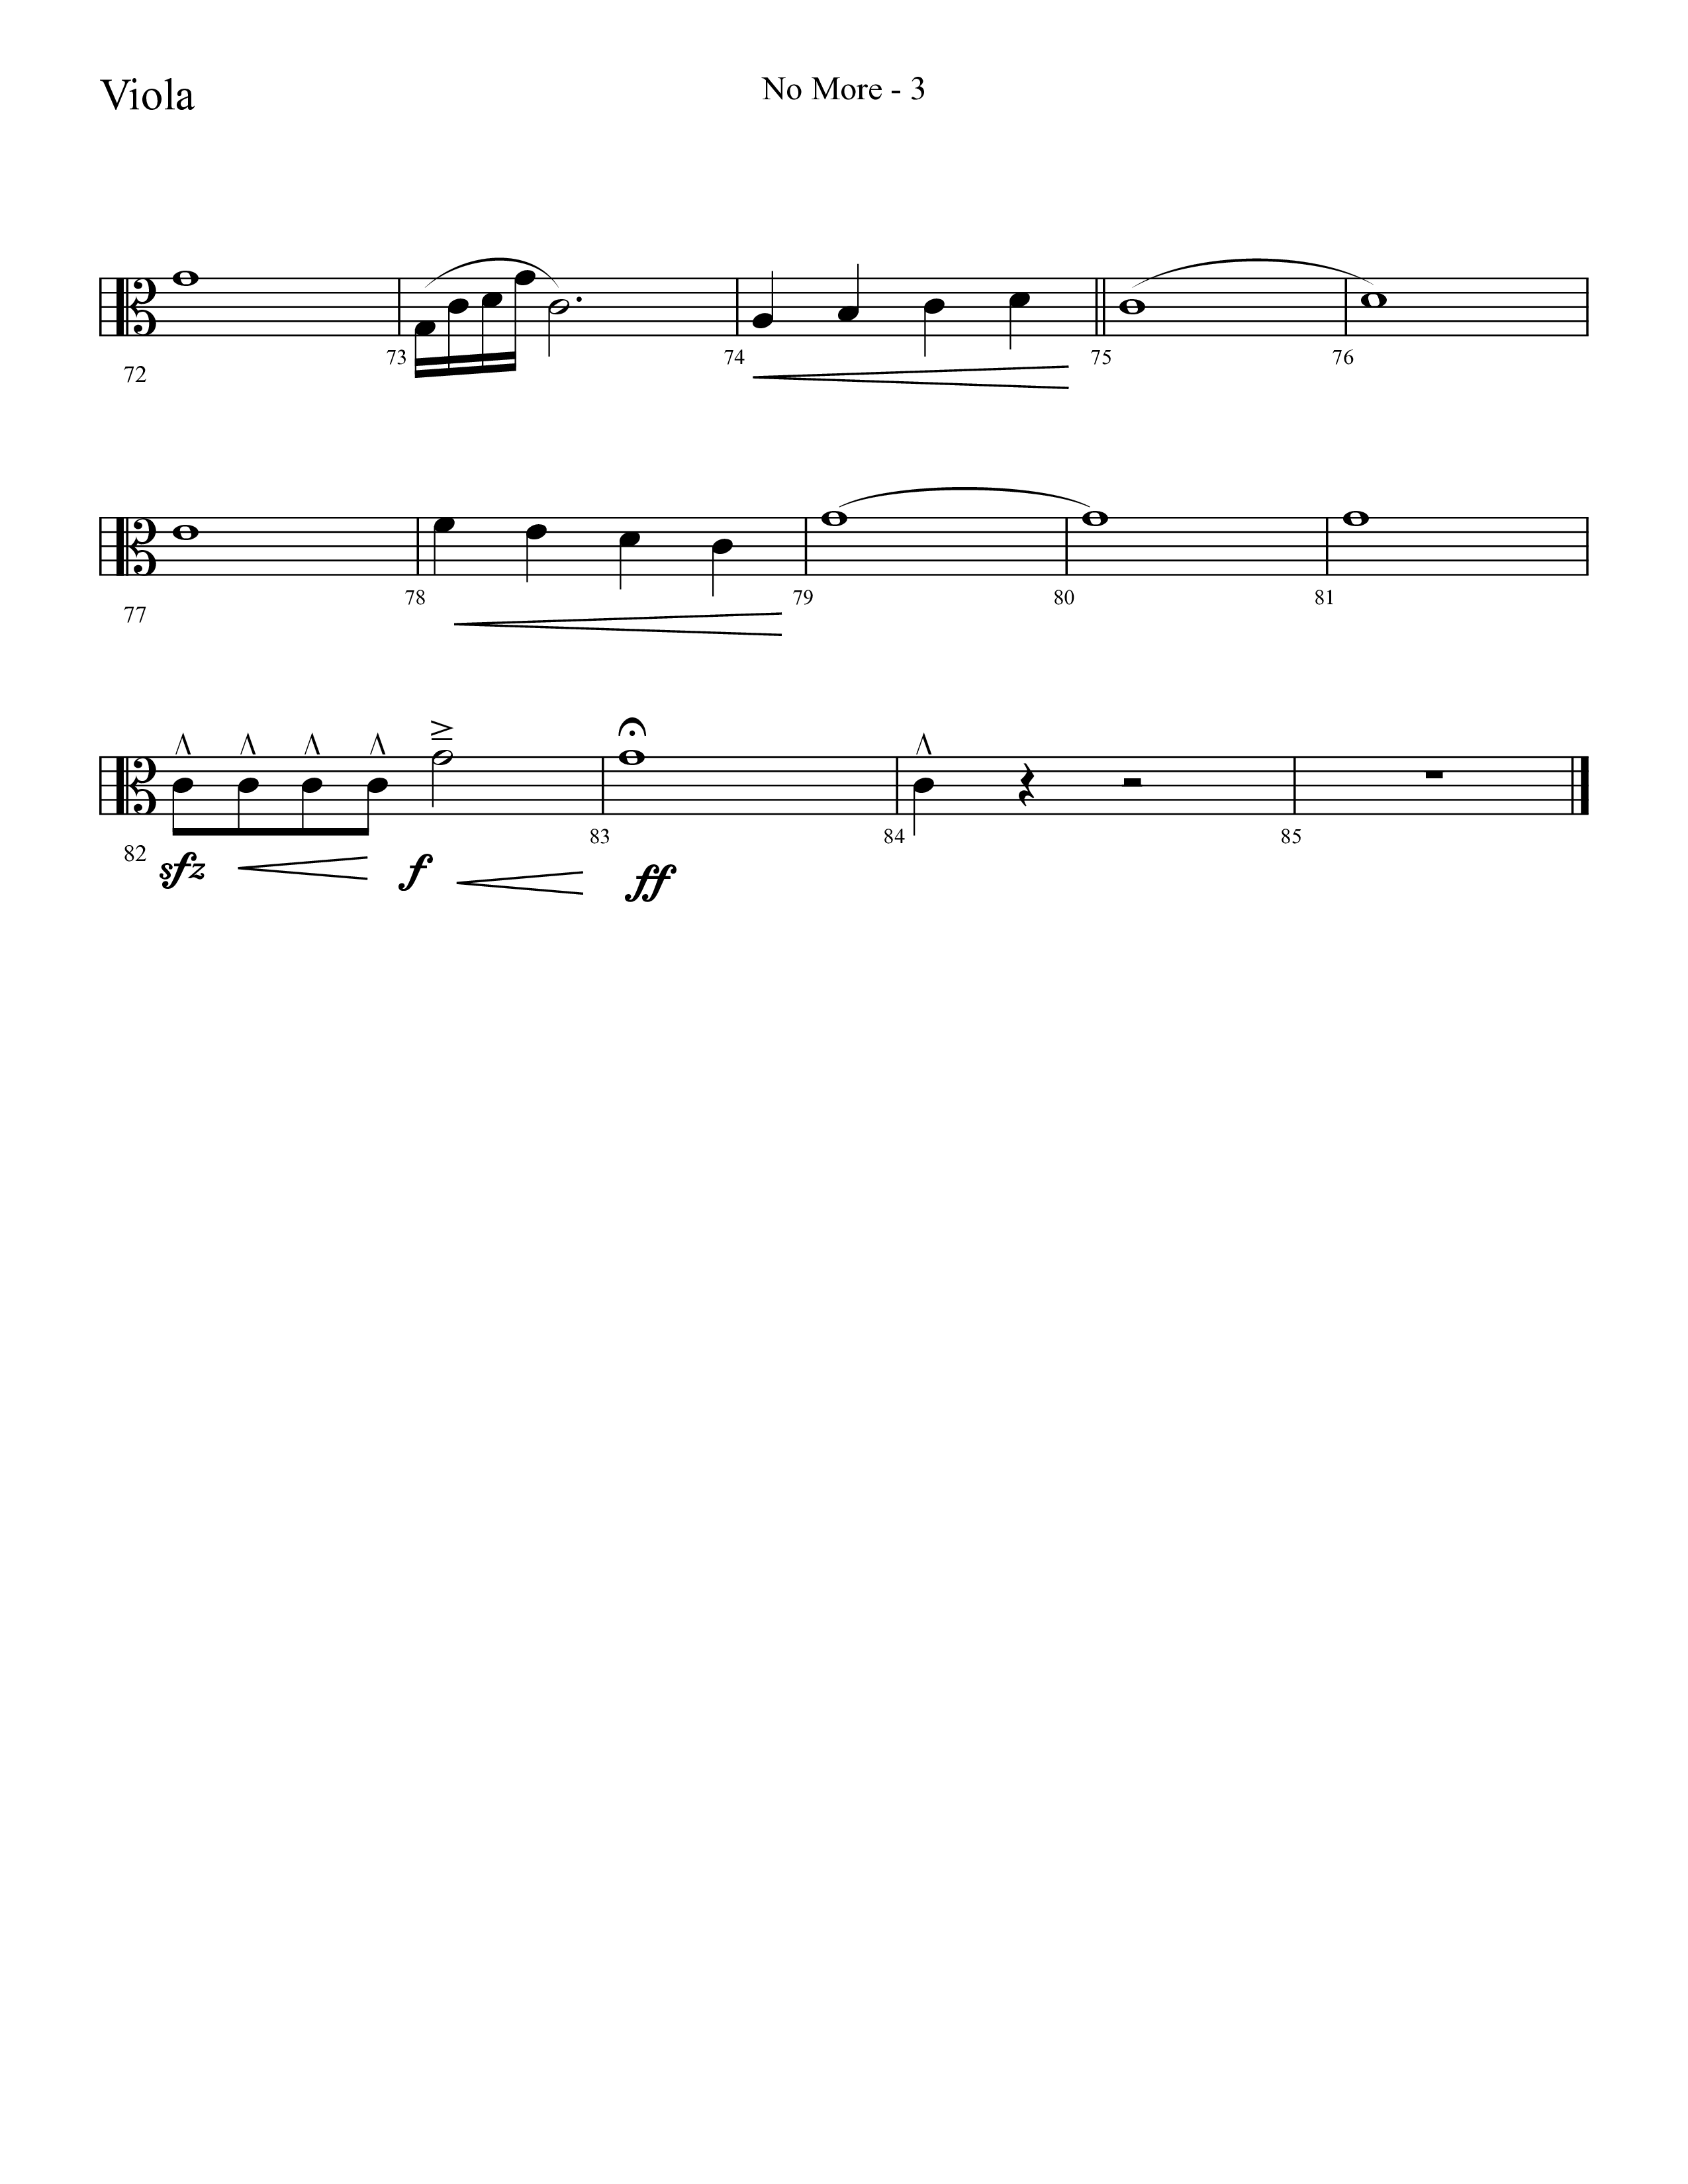 No More (Choral Anthem SATB) Viola (Lifeway Choral / Arr. Cliff Duren)